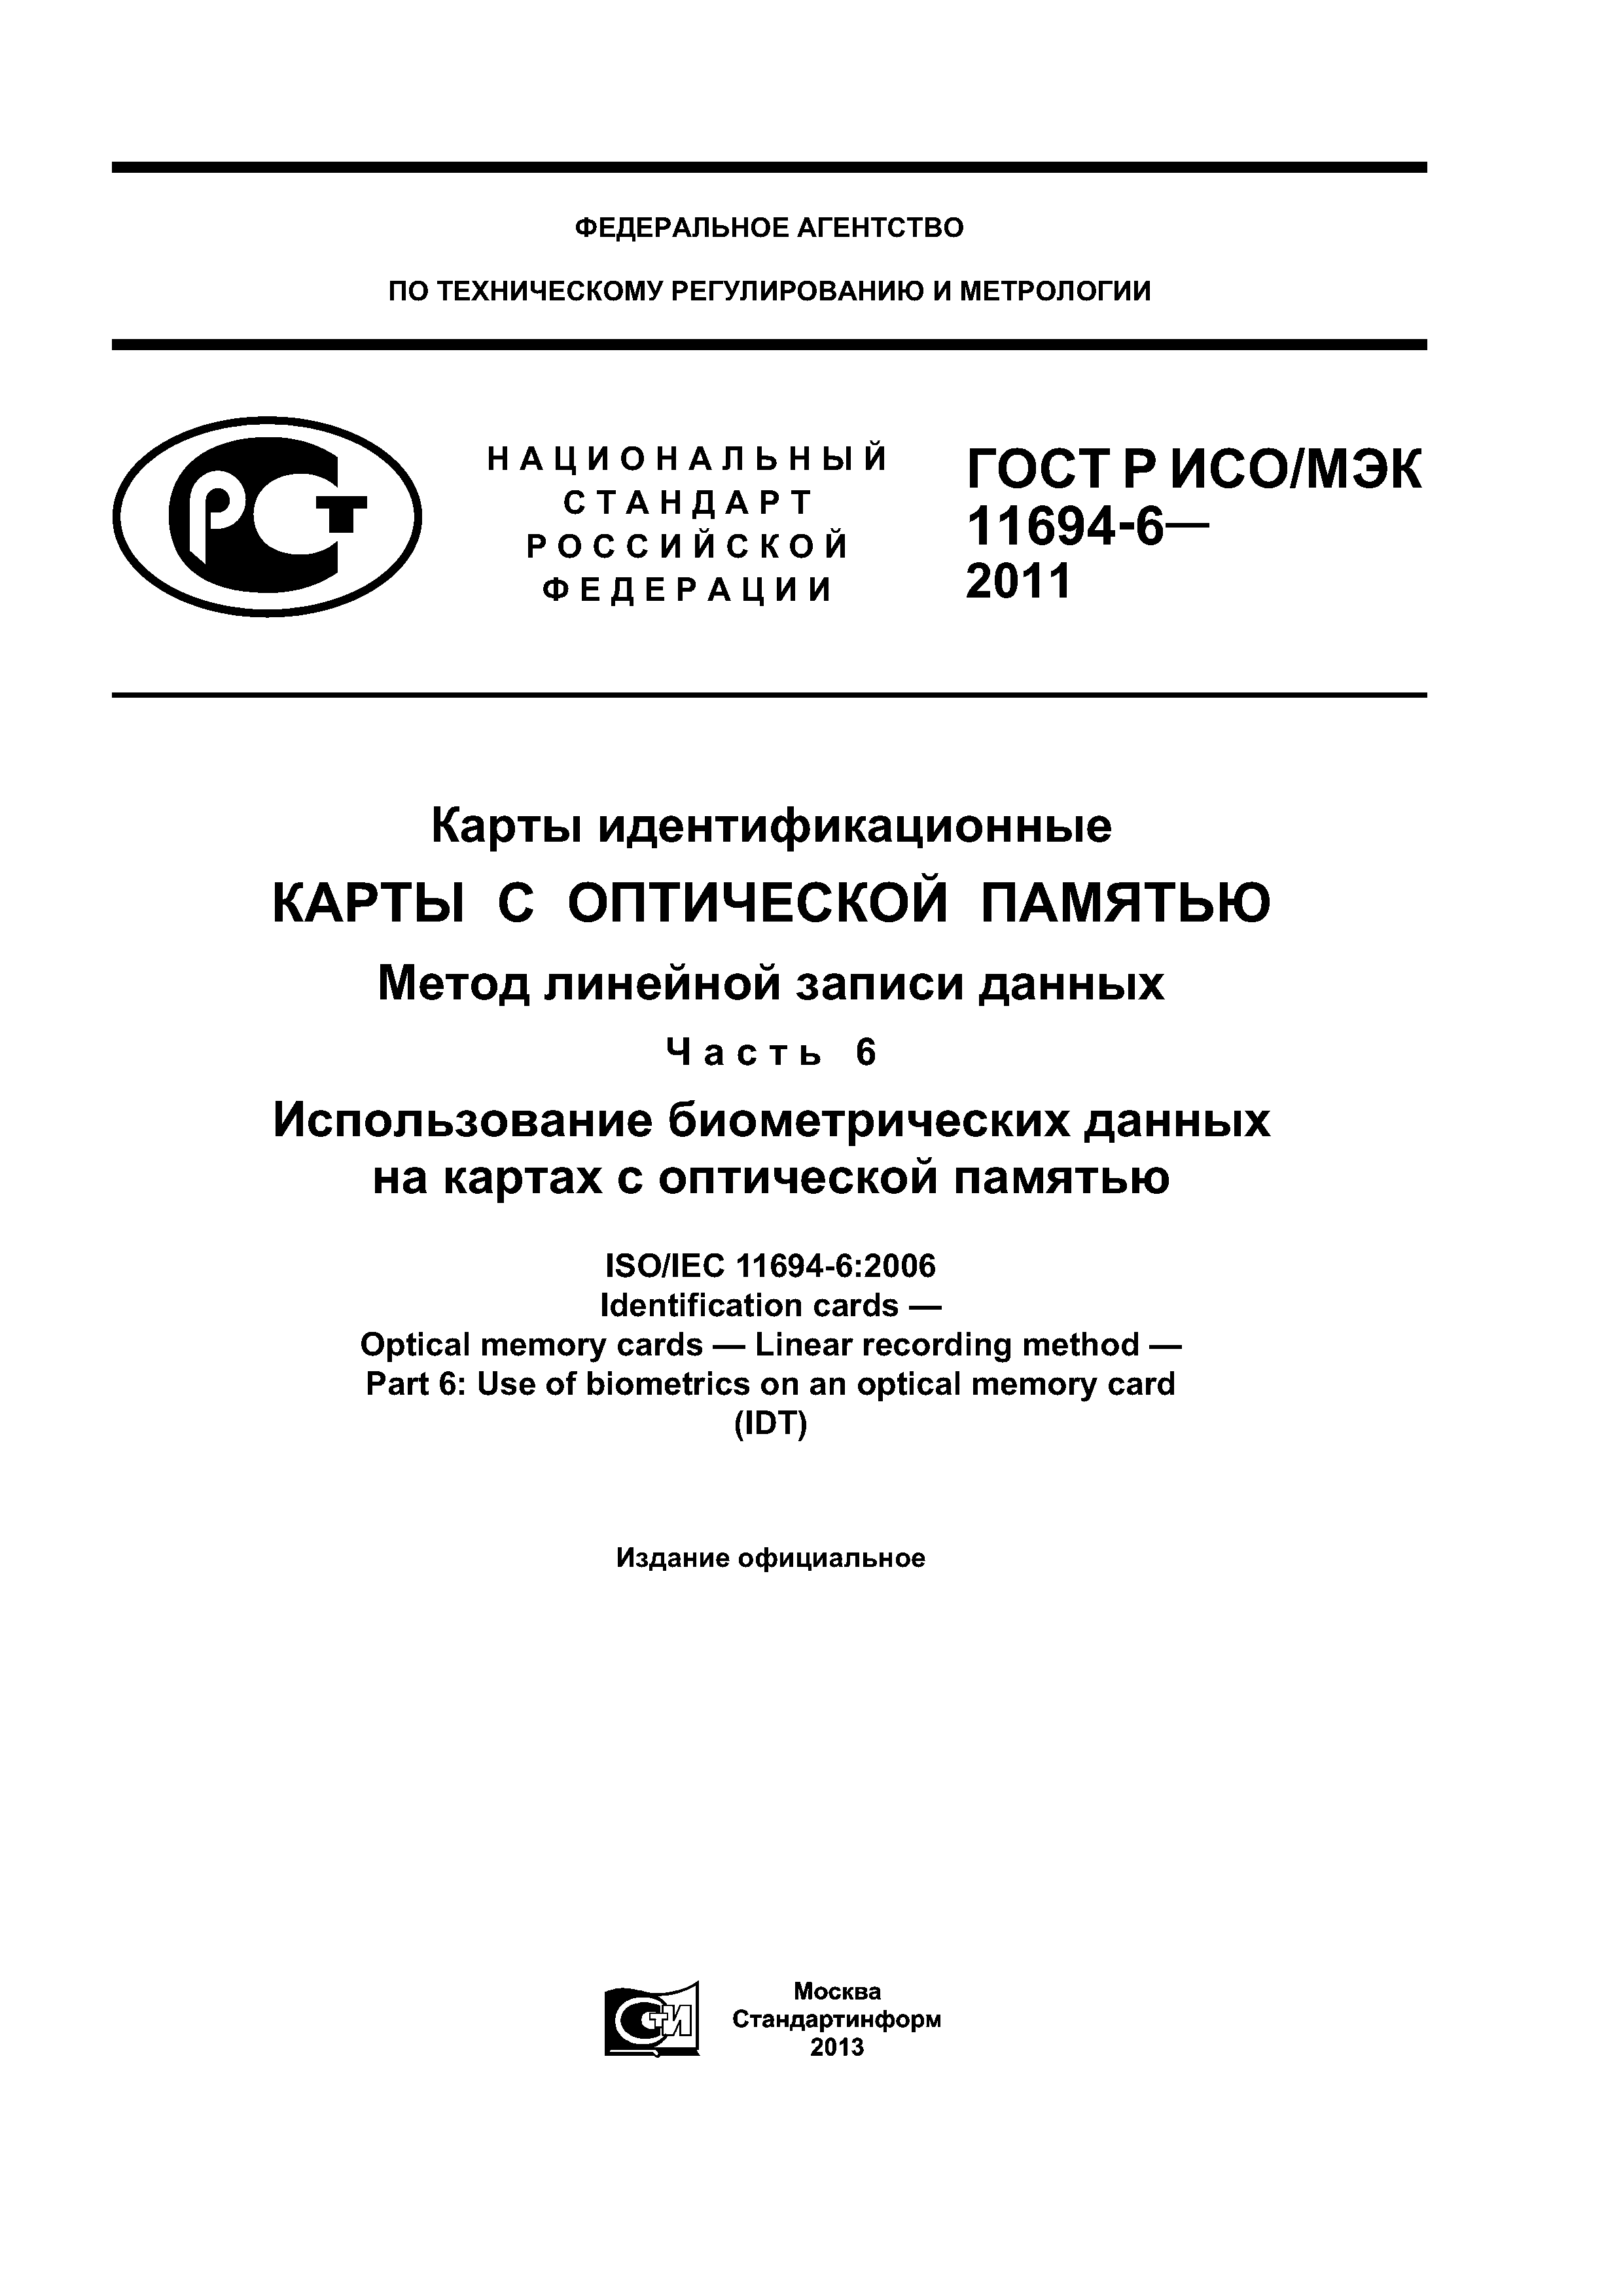 ГОСТ Р ИСО/МЭК 11694-6-2011